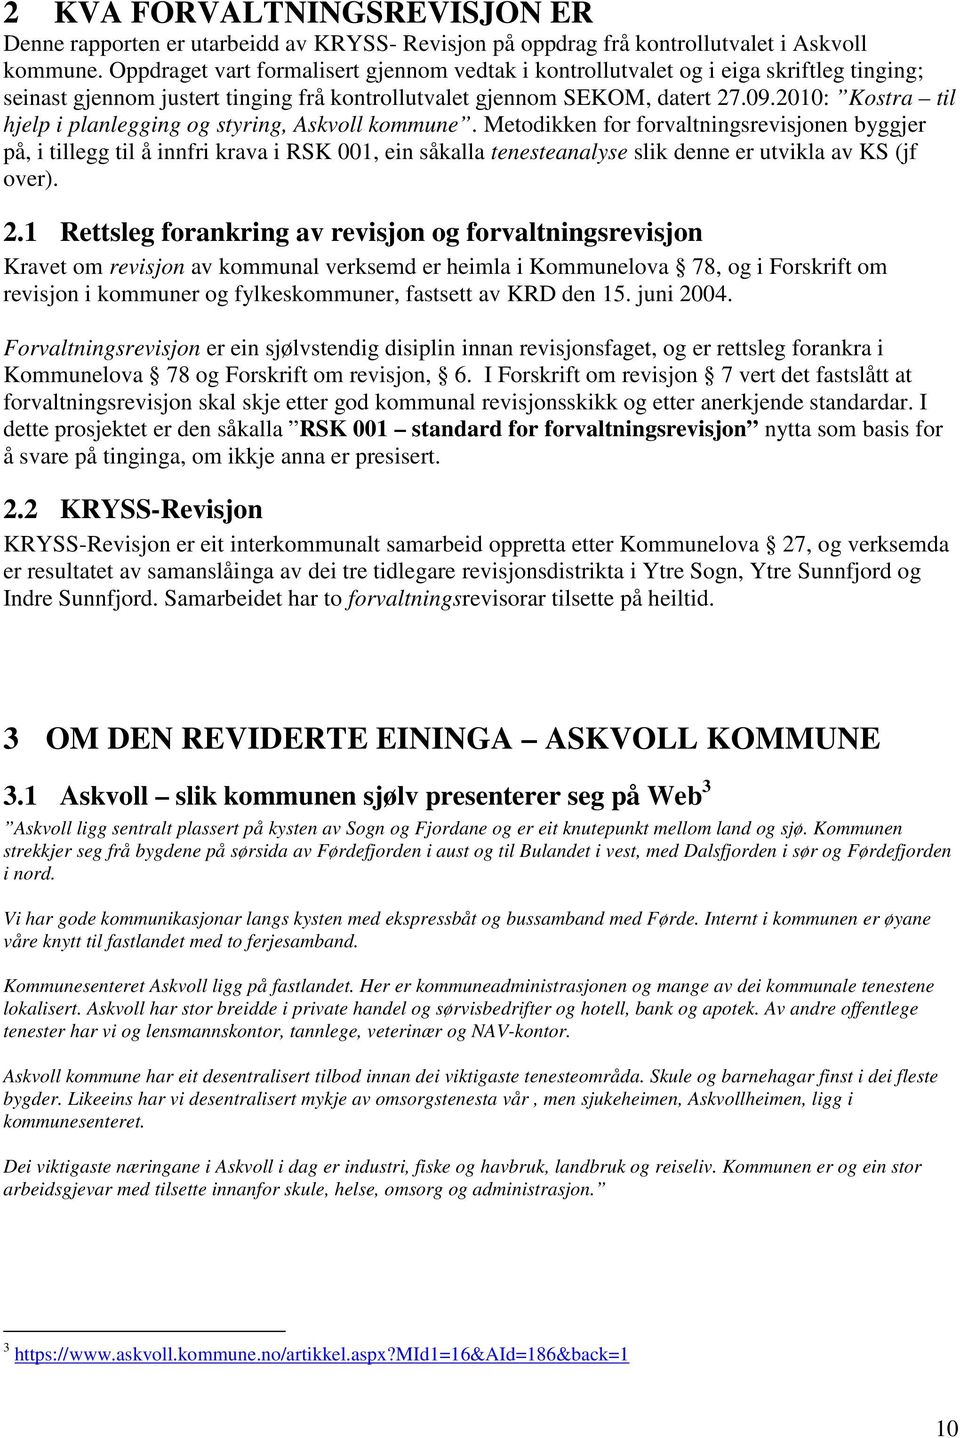 21: Kostra til hjelp i planlegging og styring, Askvoll kommune.